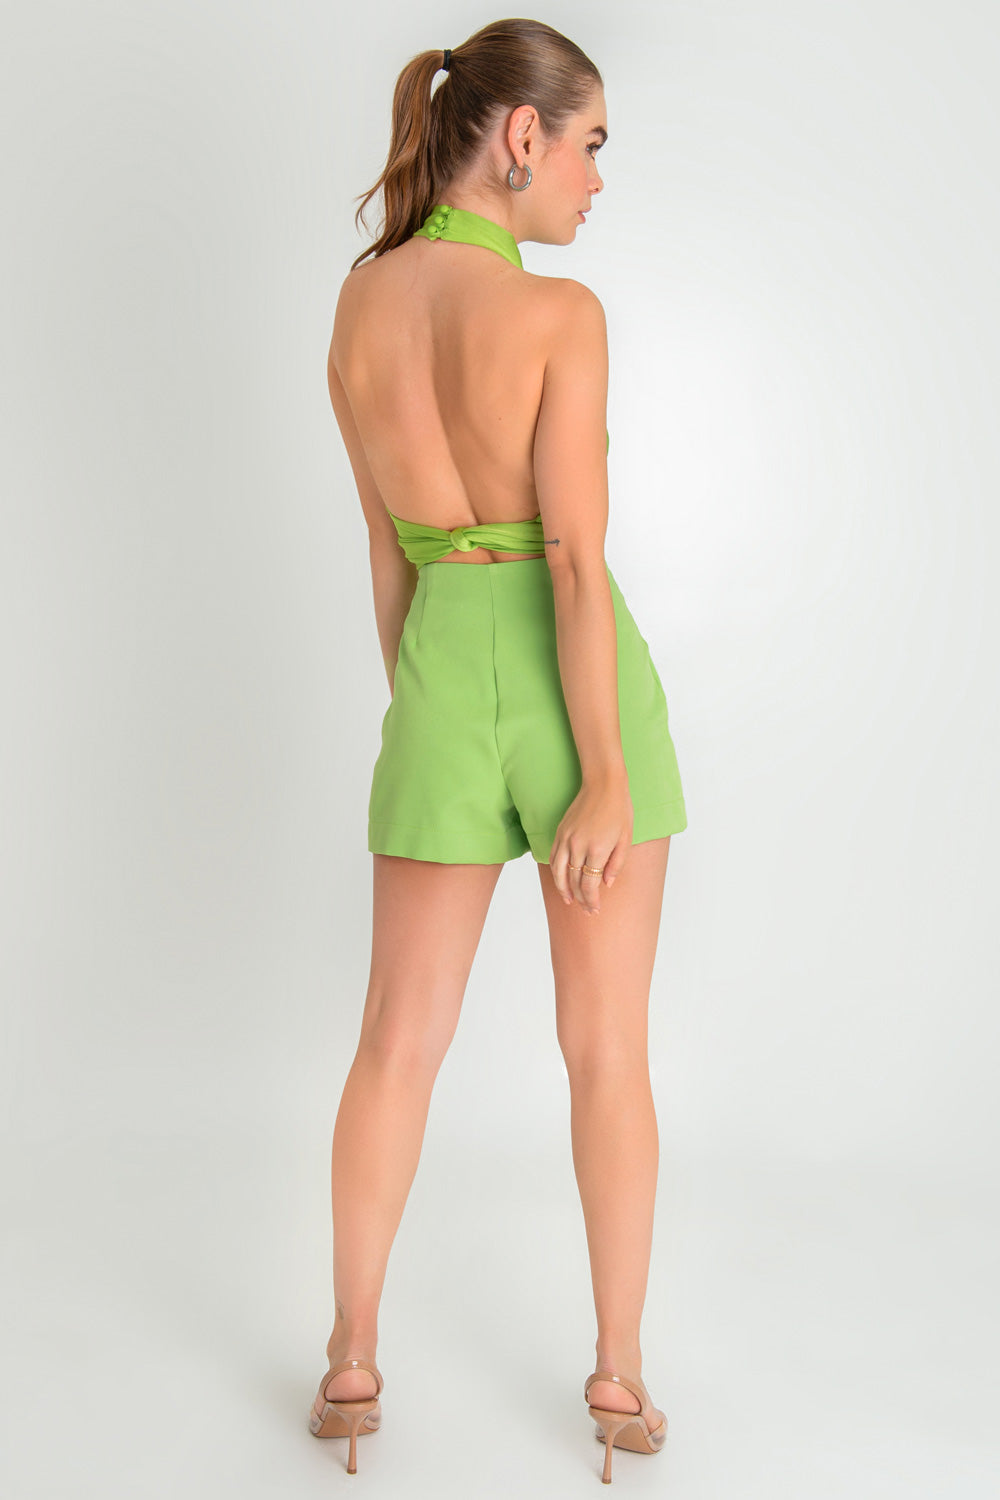 Falda short de fit ajustado, cintura alta, botones frontales decorativos en contraste y cruce frontal con abertura. Cierre lateral con cremallera oculta.